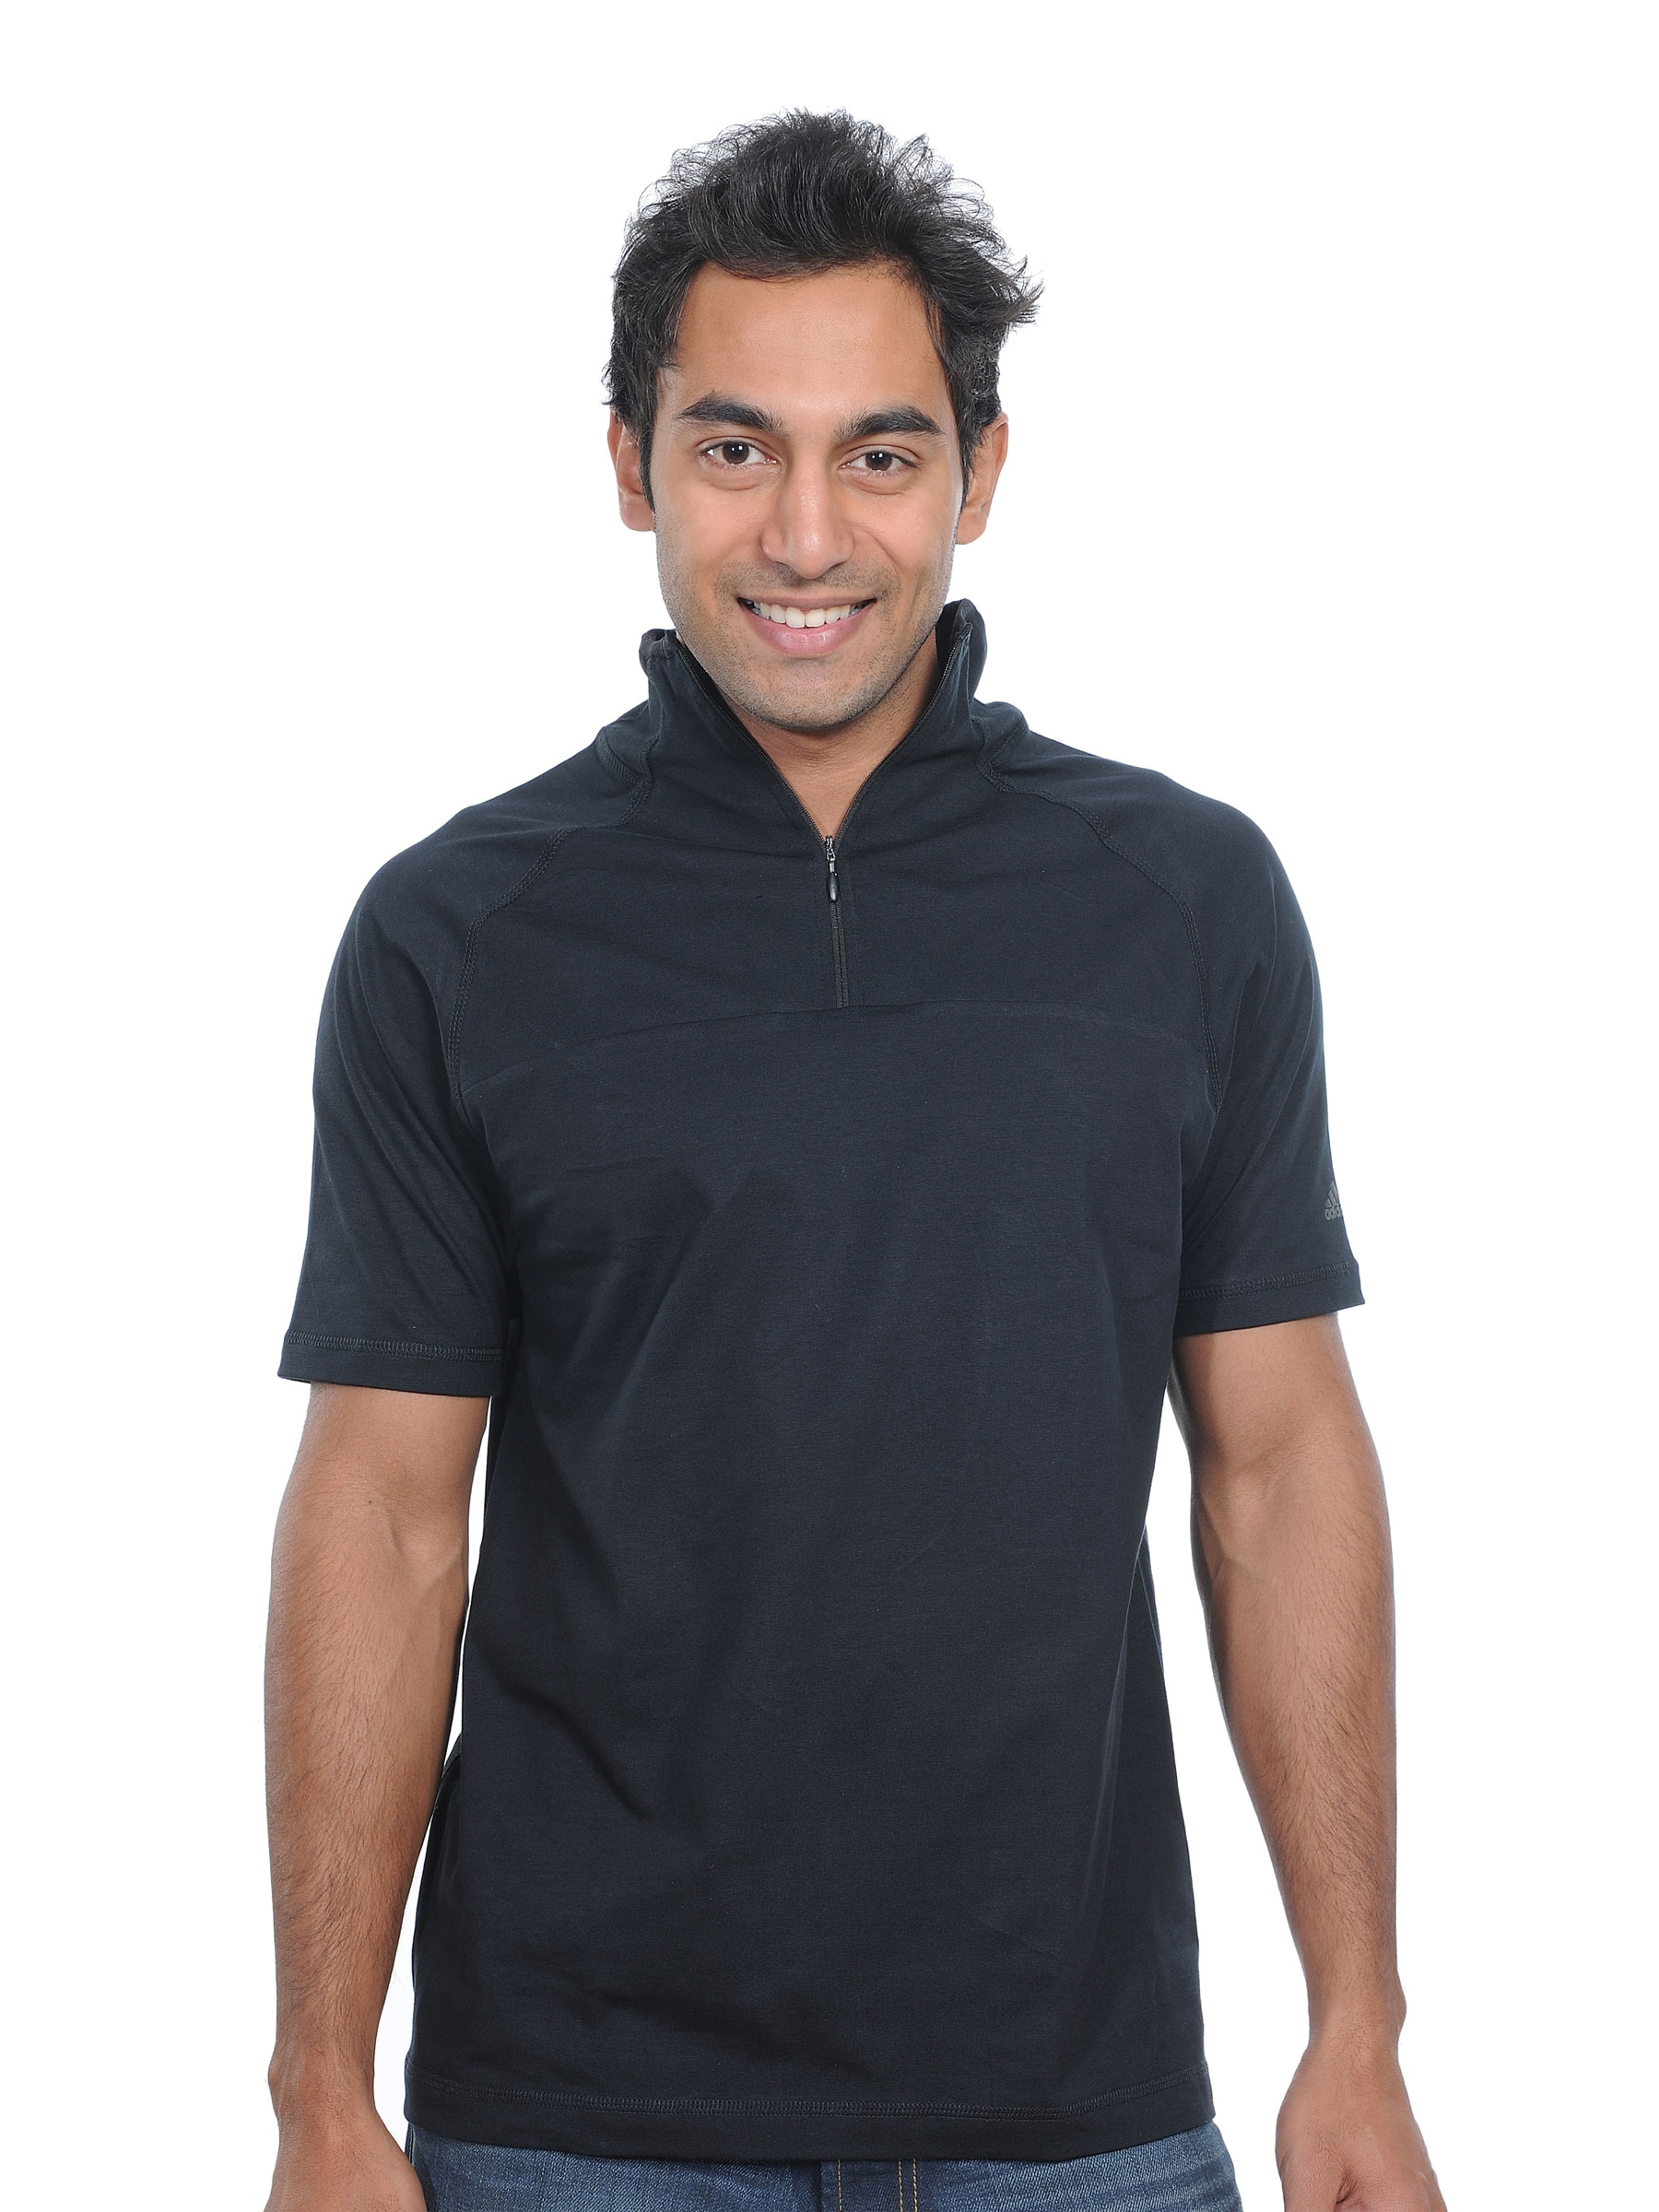 ADIDAS Mens Stylish Black Polo T-shirt